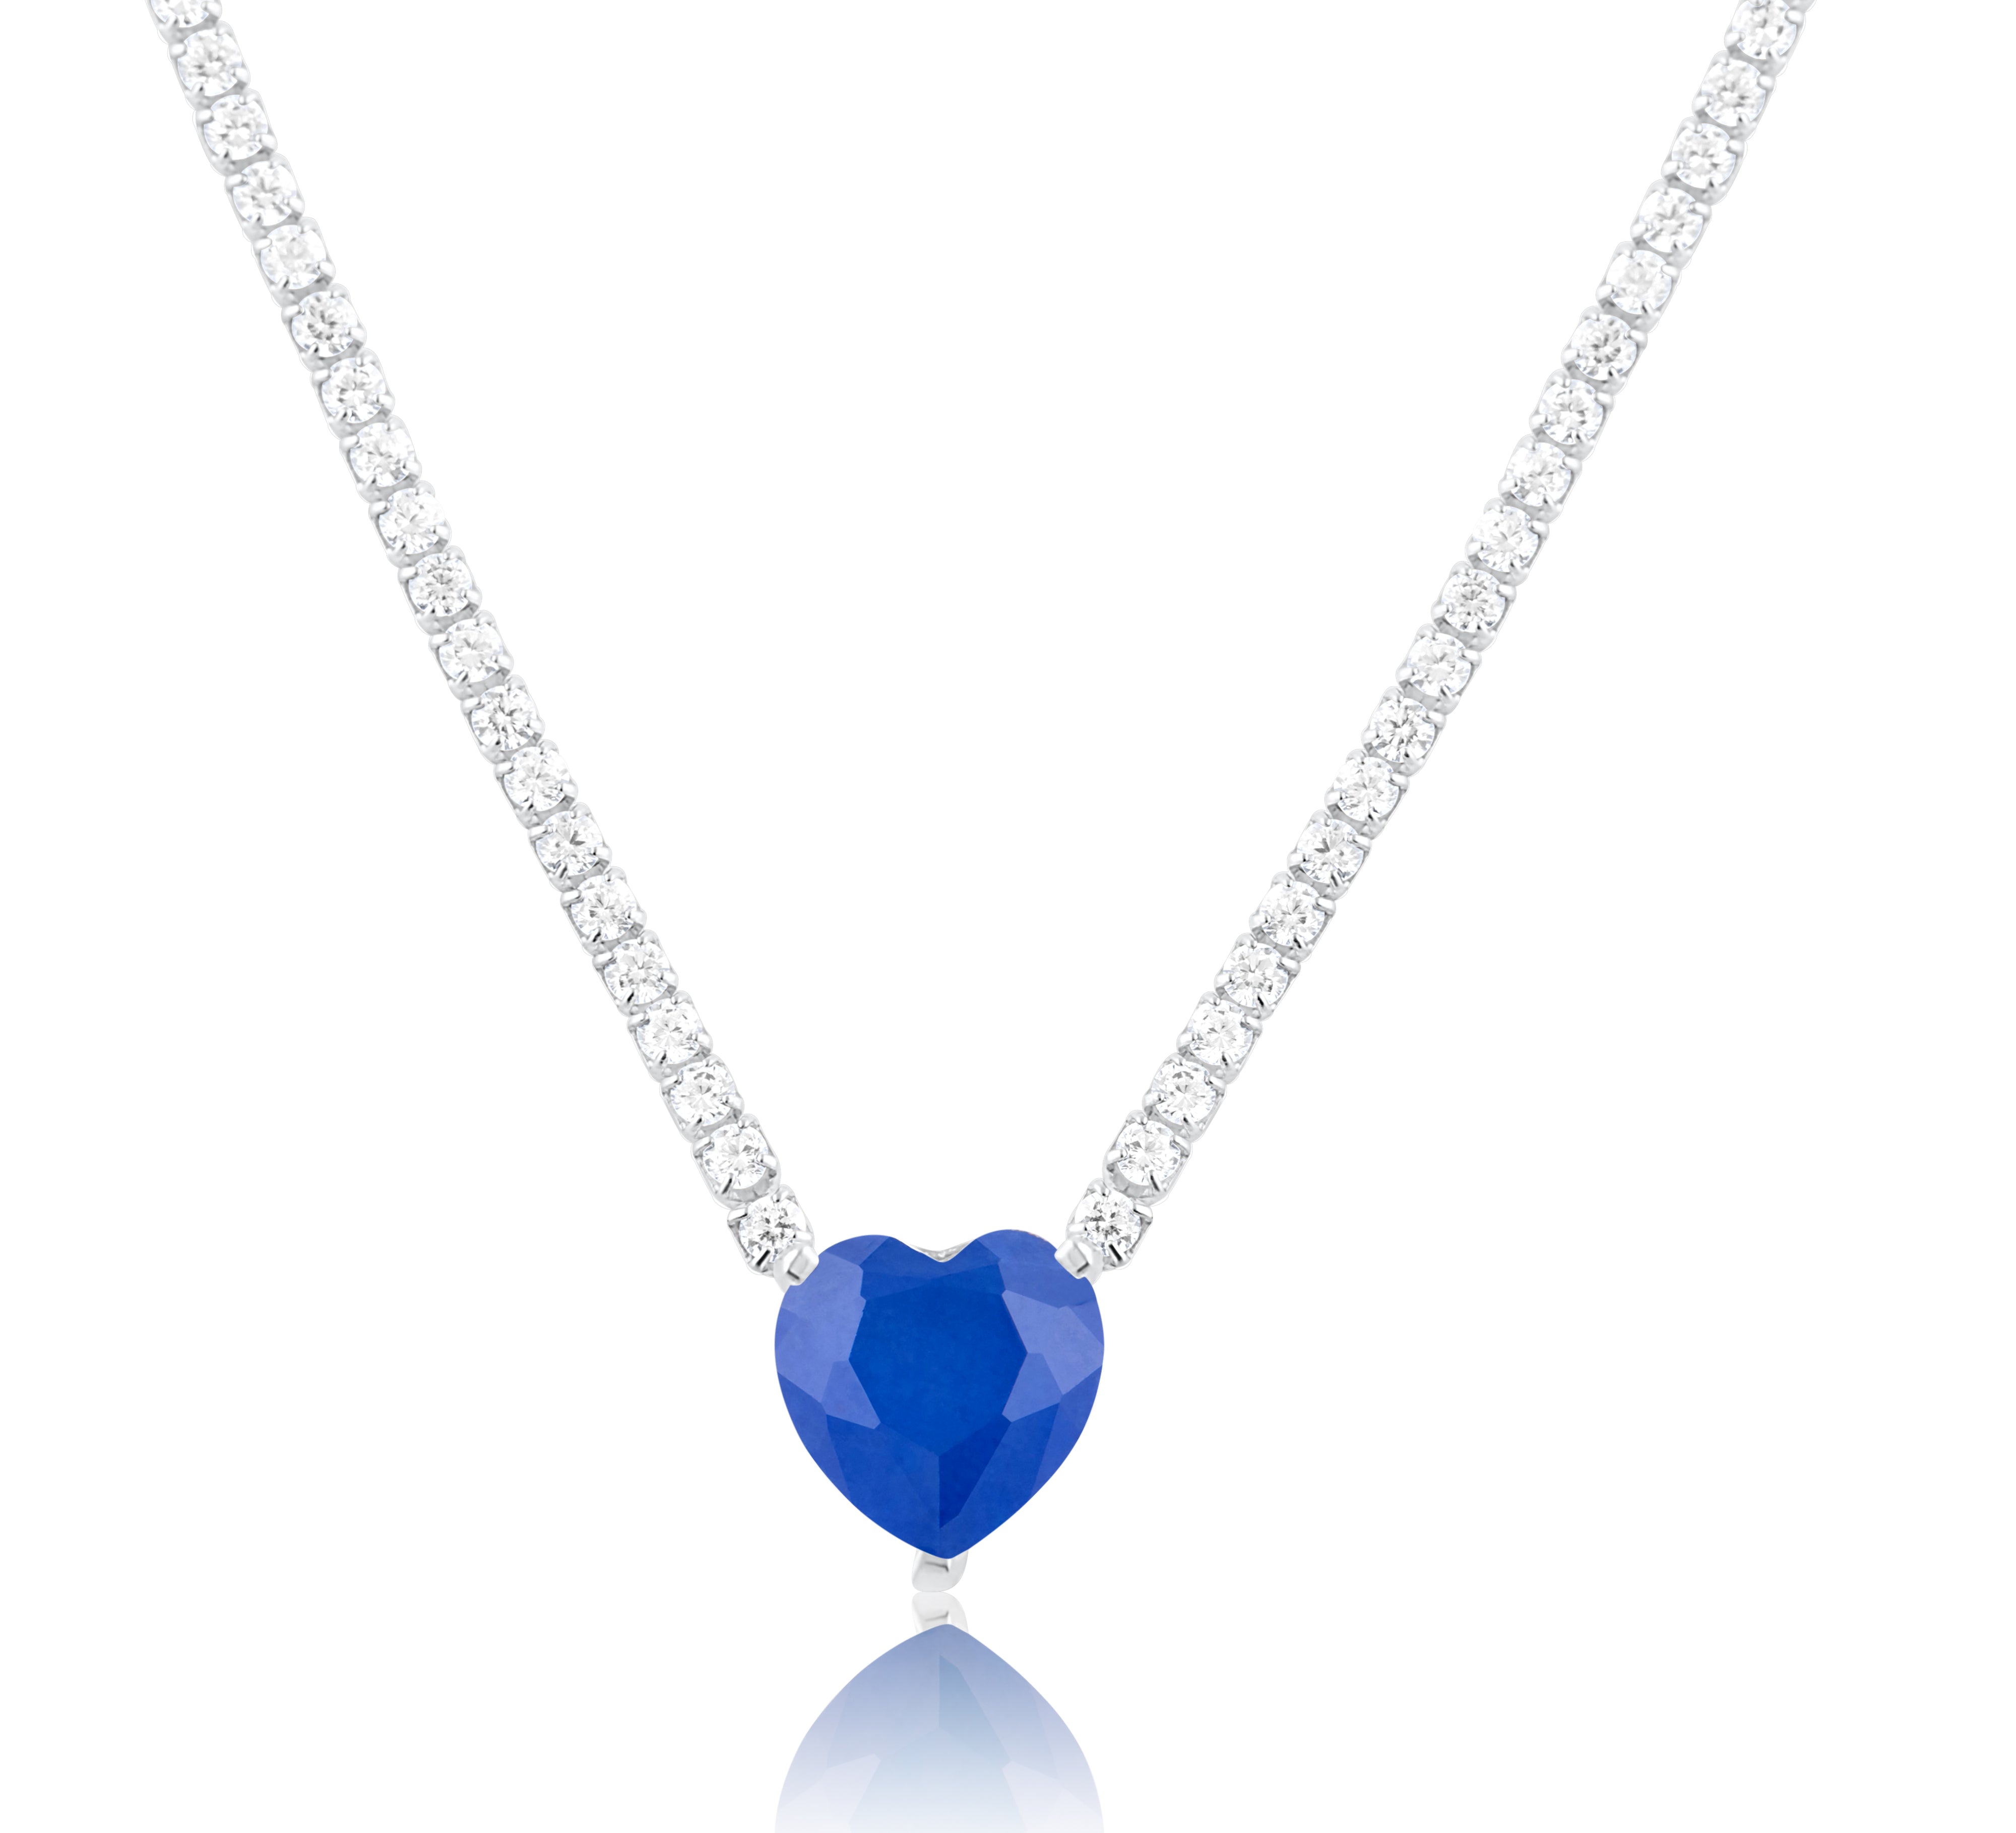 Fancy Heart Silver Heart Tennis Necklace